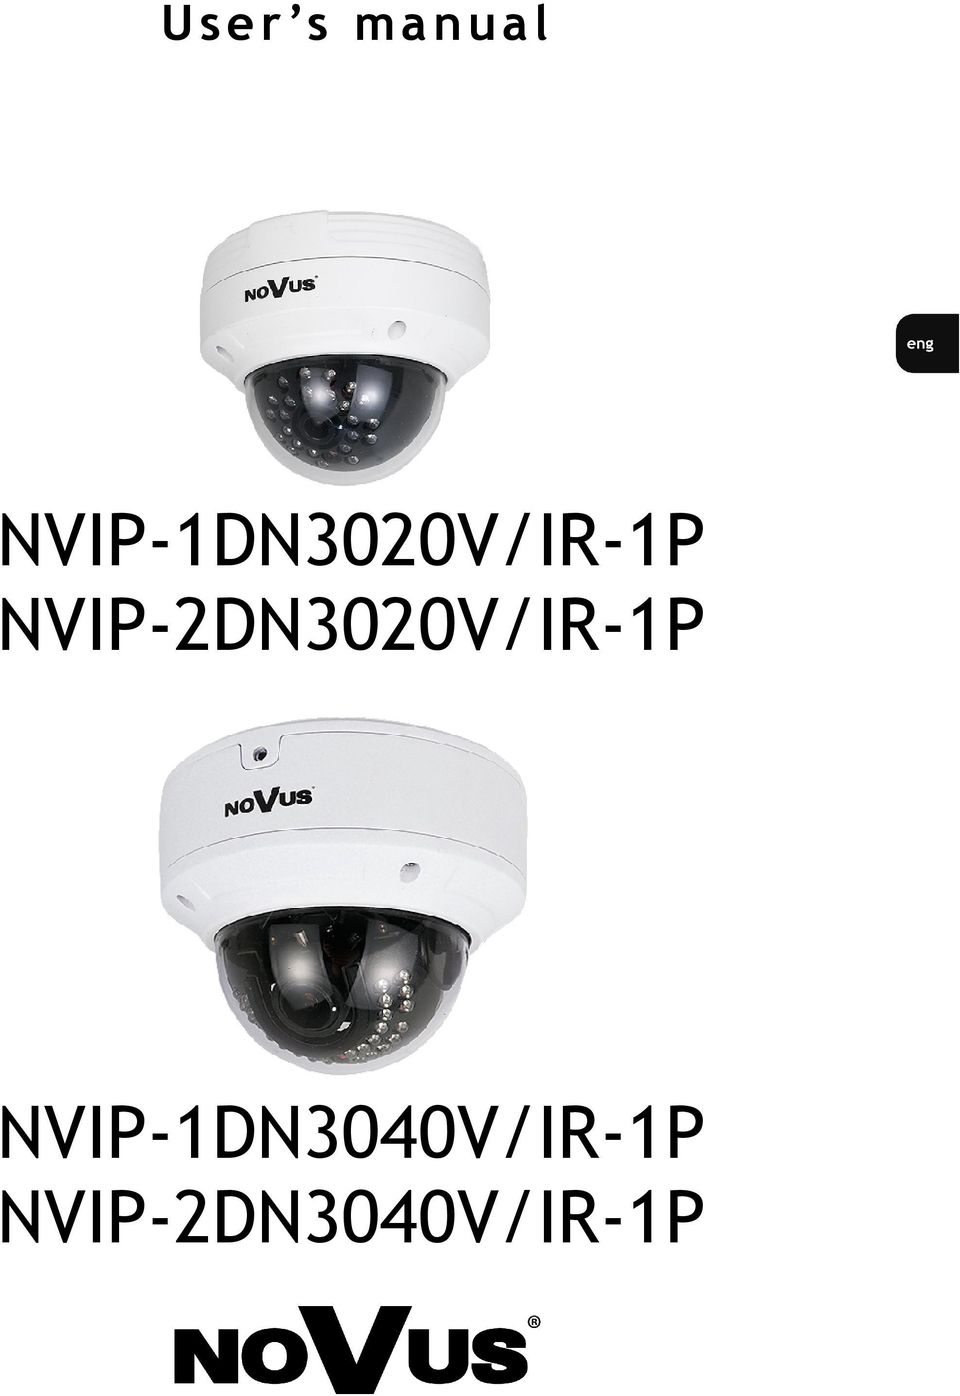 NVIP-2DN3020V/IR-1P